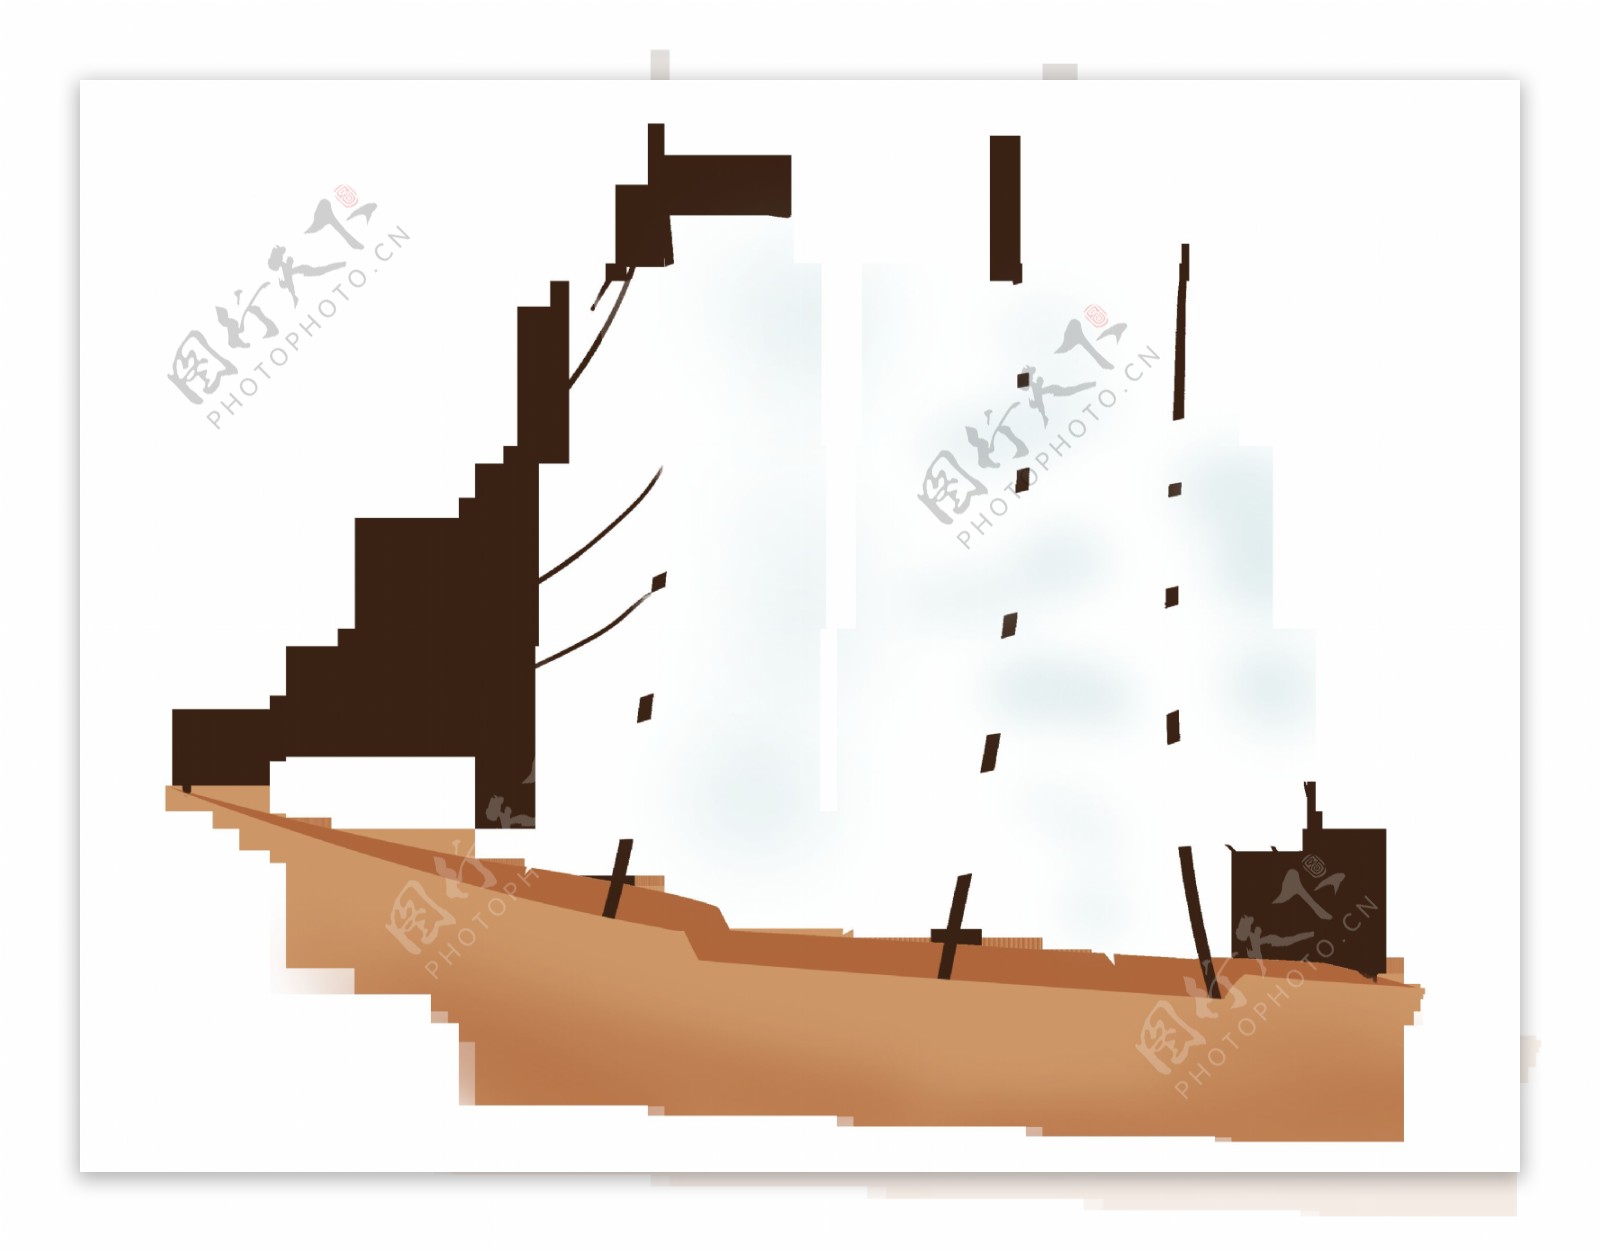 帆船插画卡通企业文化标语标志